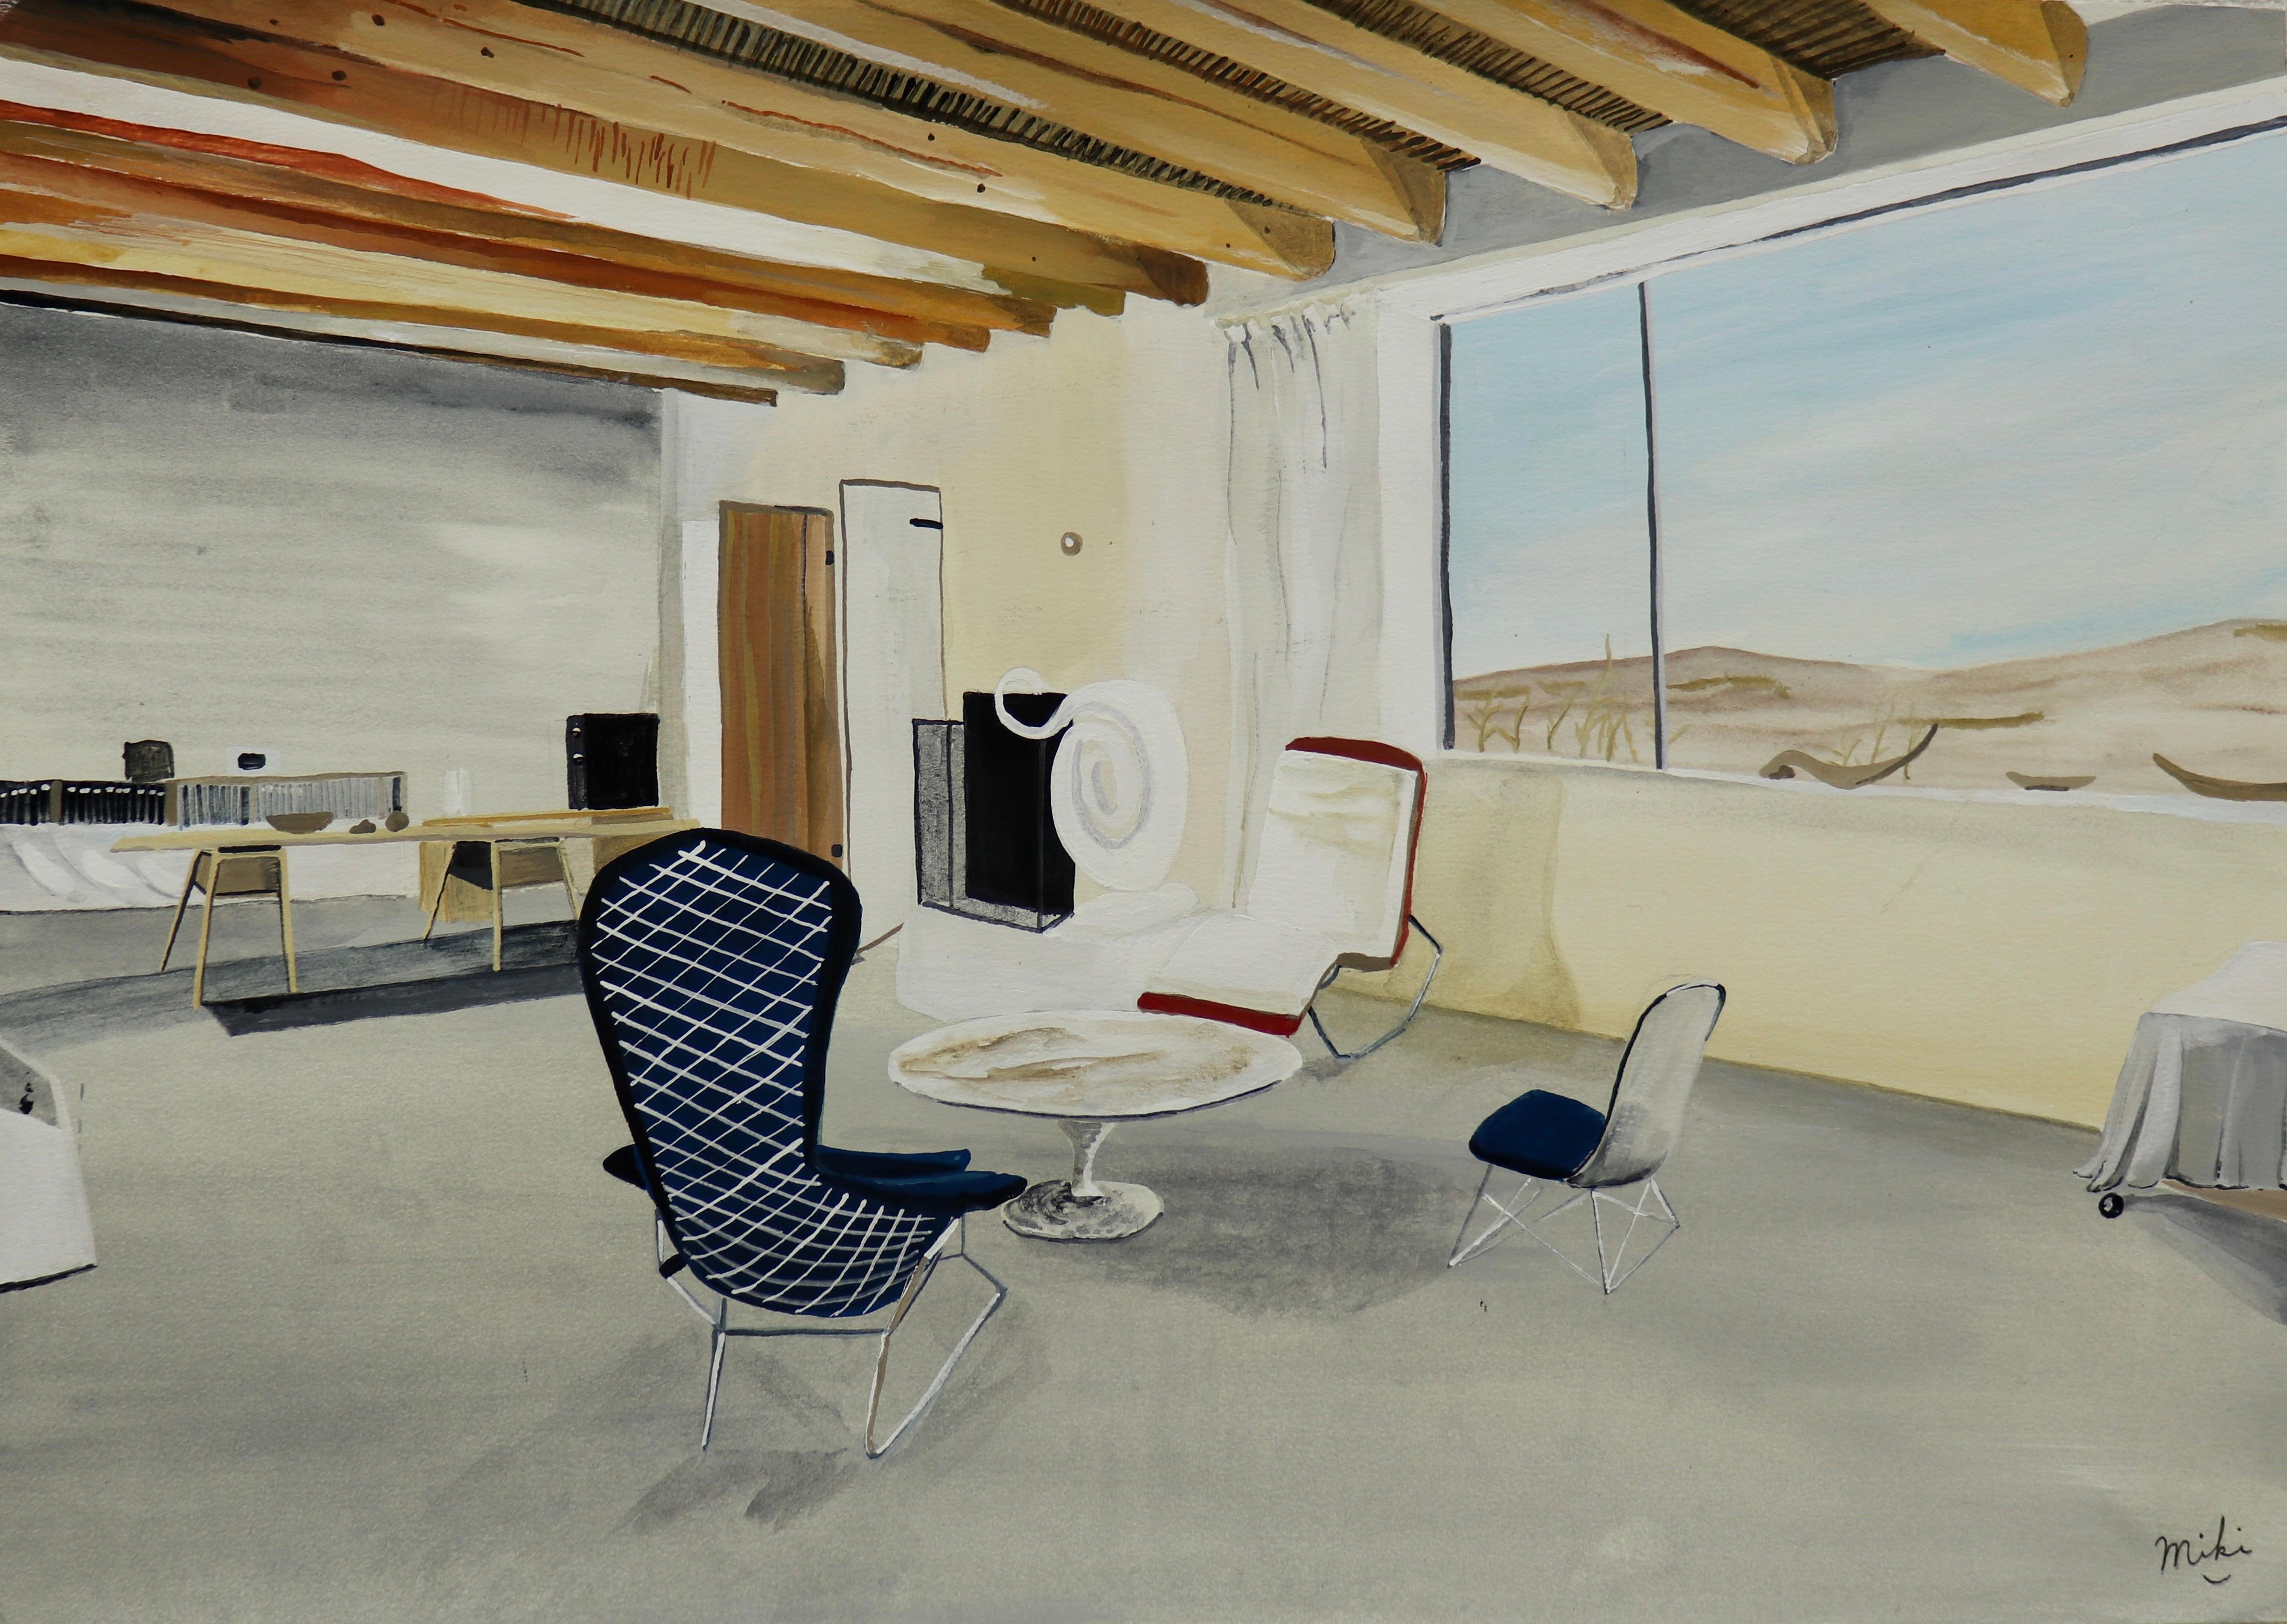 Georgia O'Keeffe's Studio & Fireplace, intérieurs, paysage désertique, tons terreux